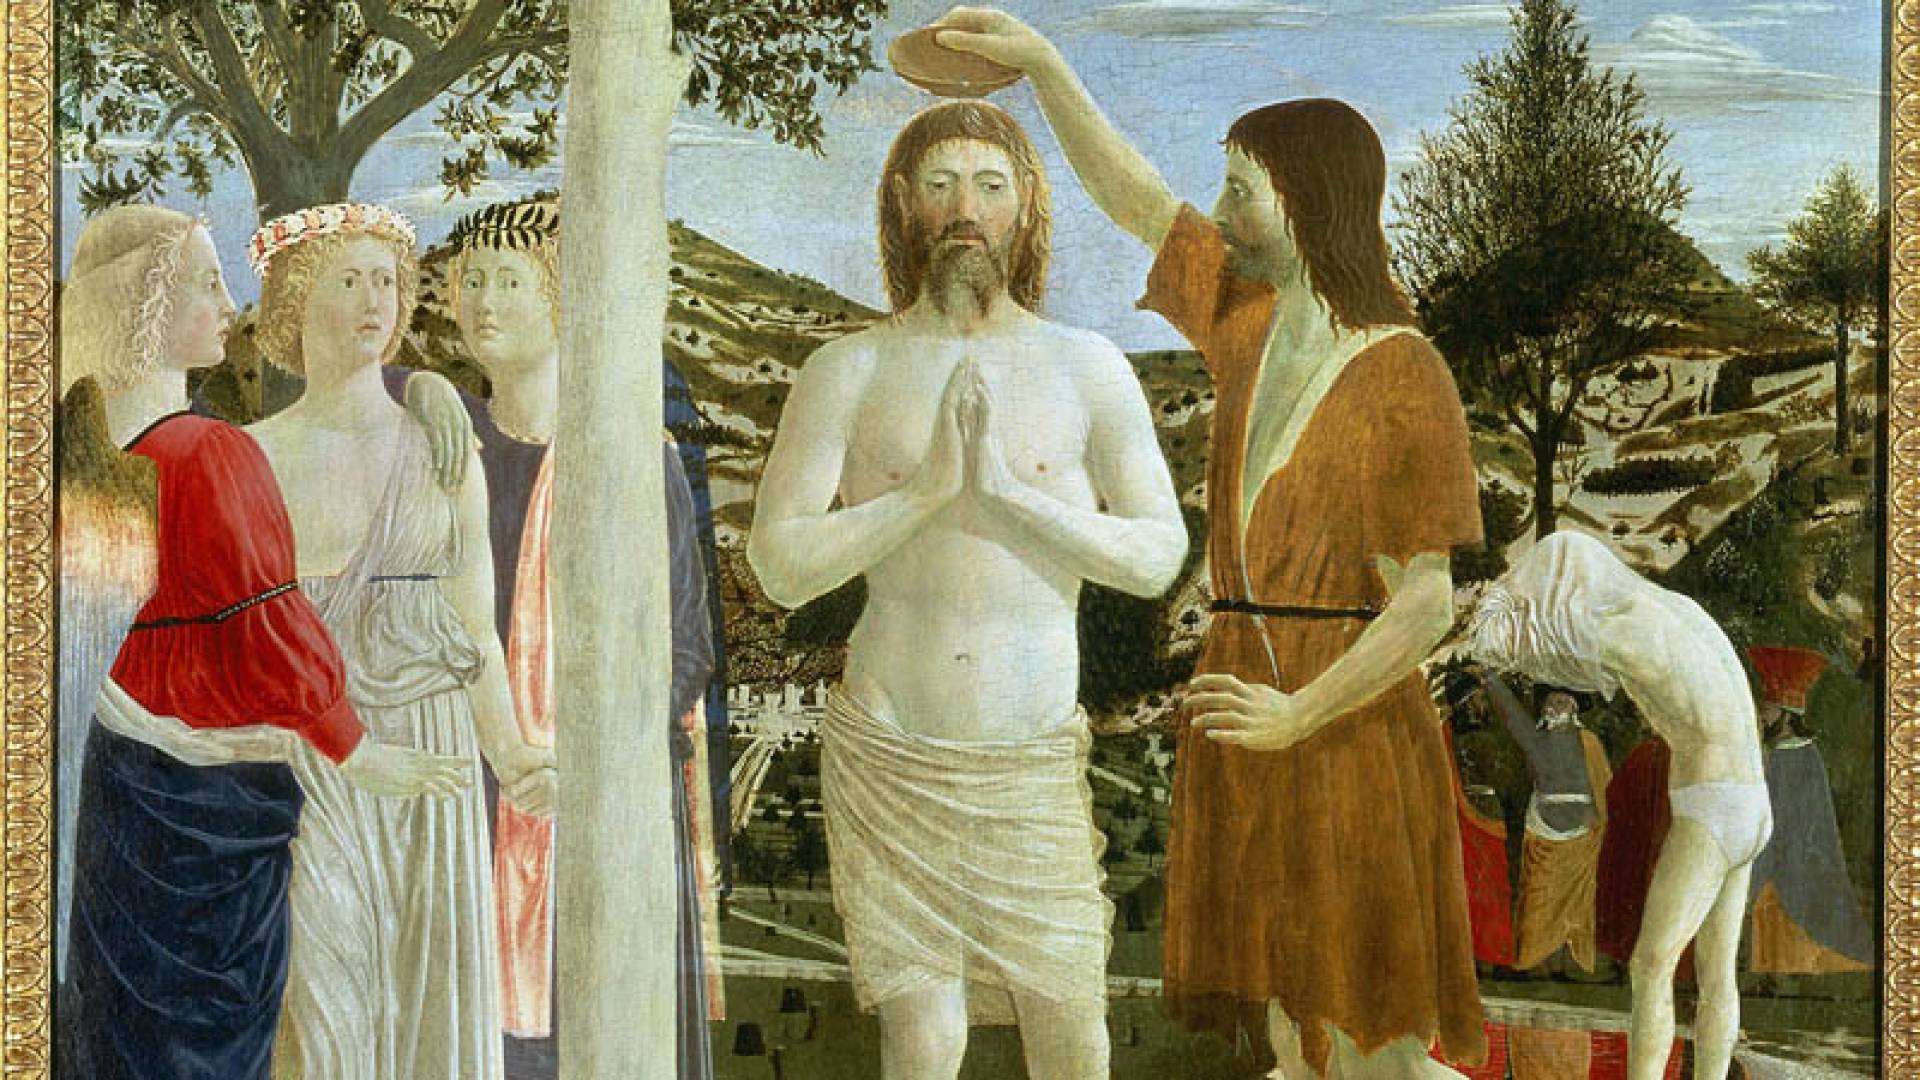 NATIONAL GALLERY LONDRA, Piero Della Francesca